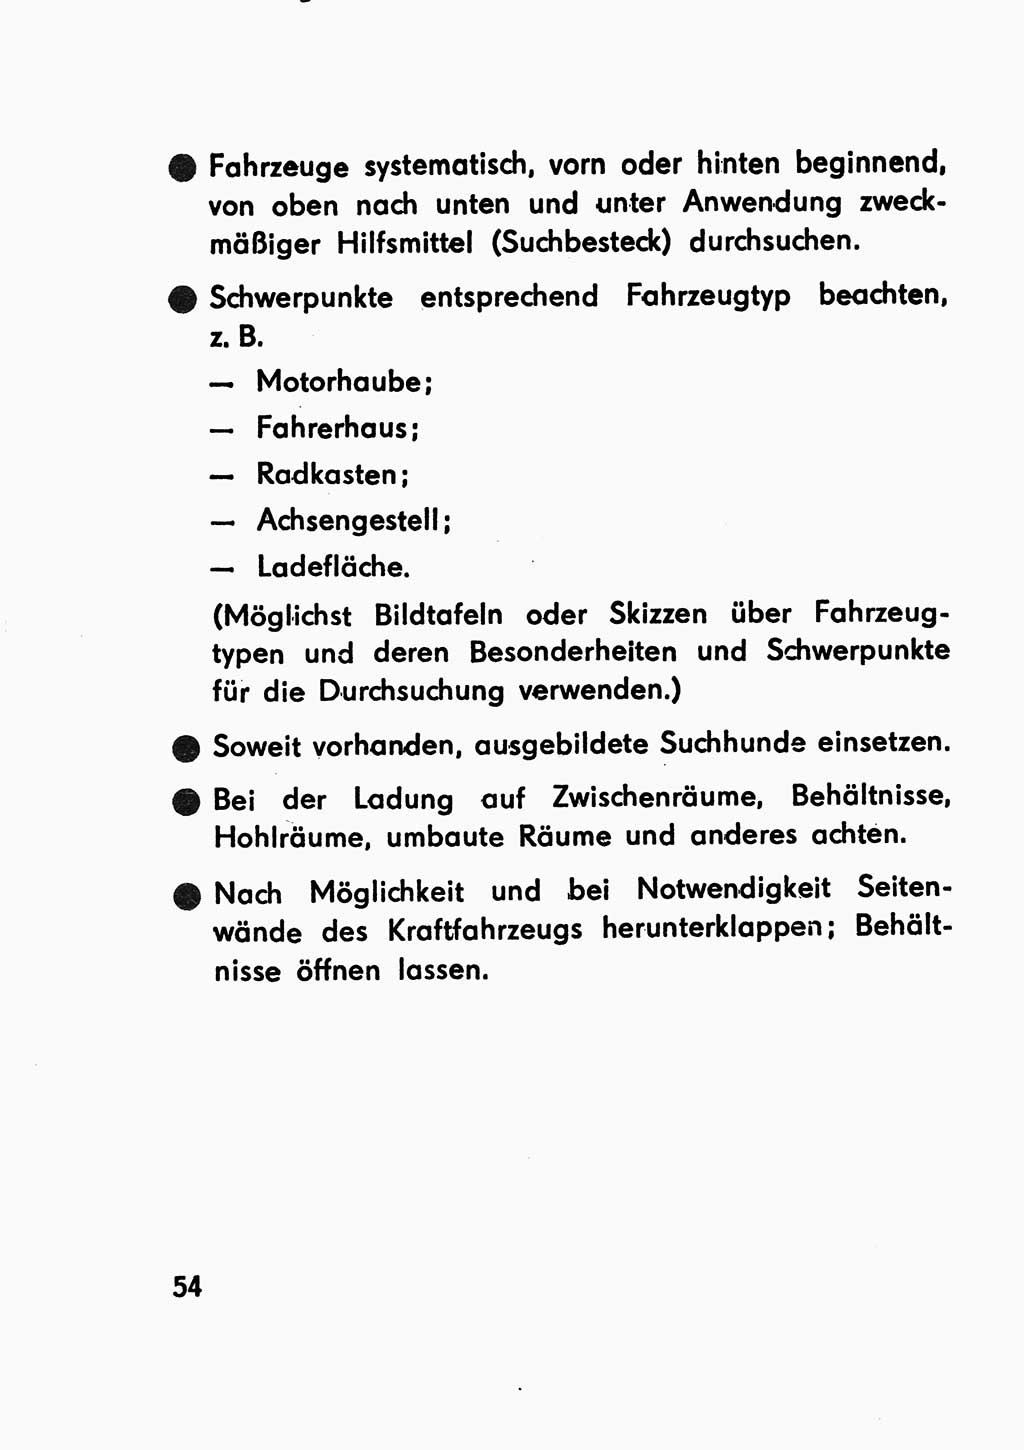 Merkbuch für SV-Angehörige [Strafvollzug (SV) Deutsche Demokratische Republik (DDR)] 1975, Seite 54 (SV-Angeh. DDR 1975, S. 54)